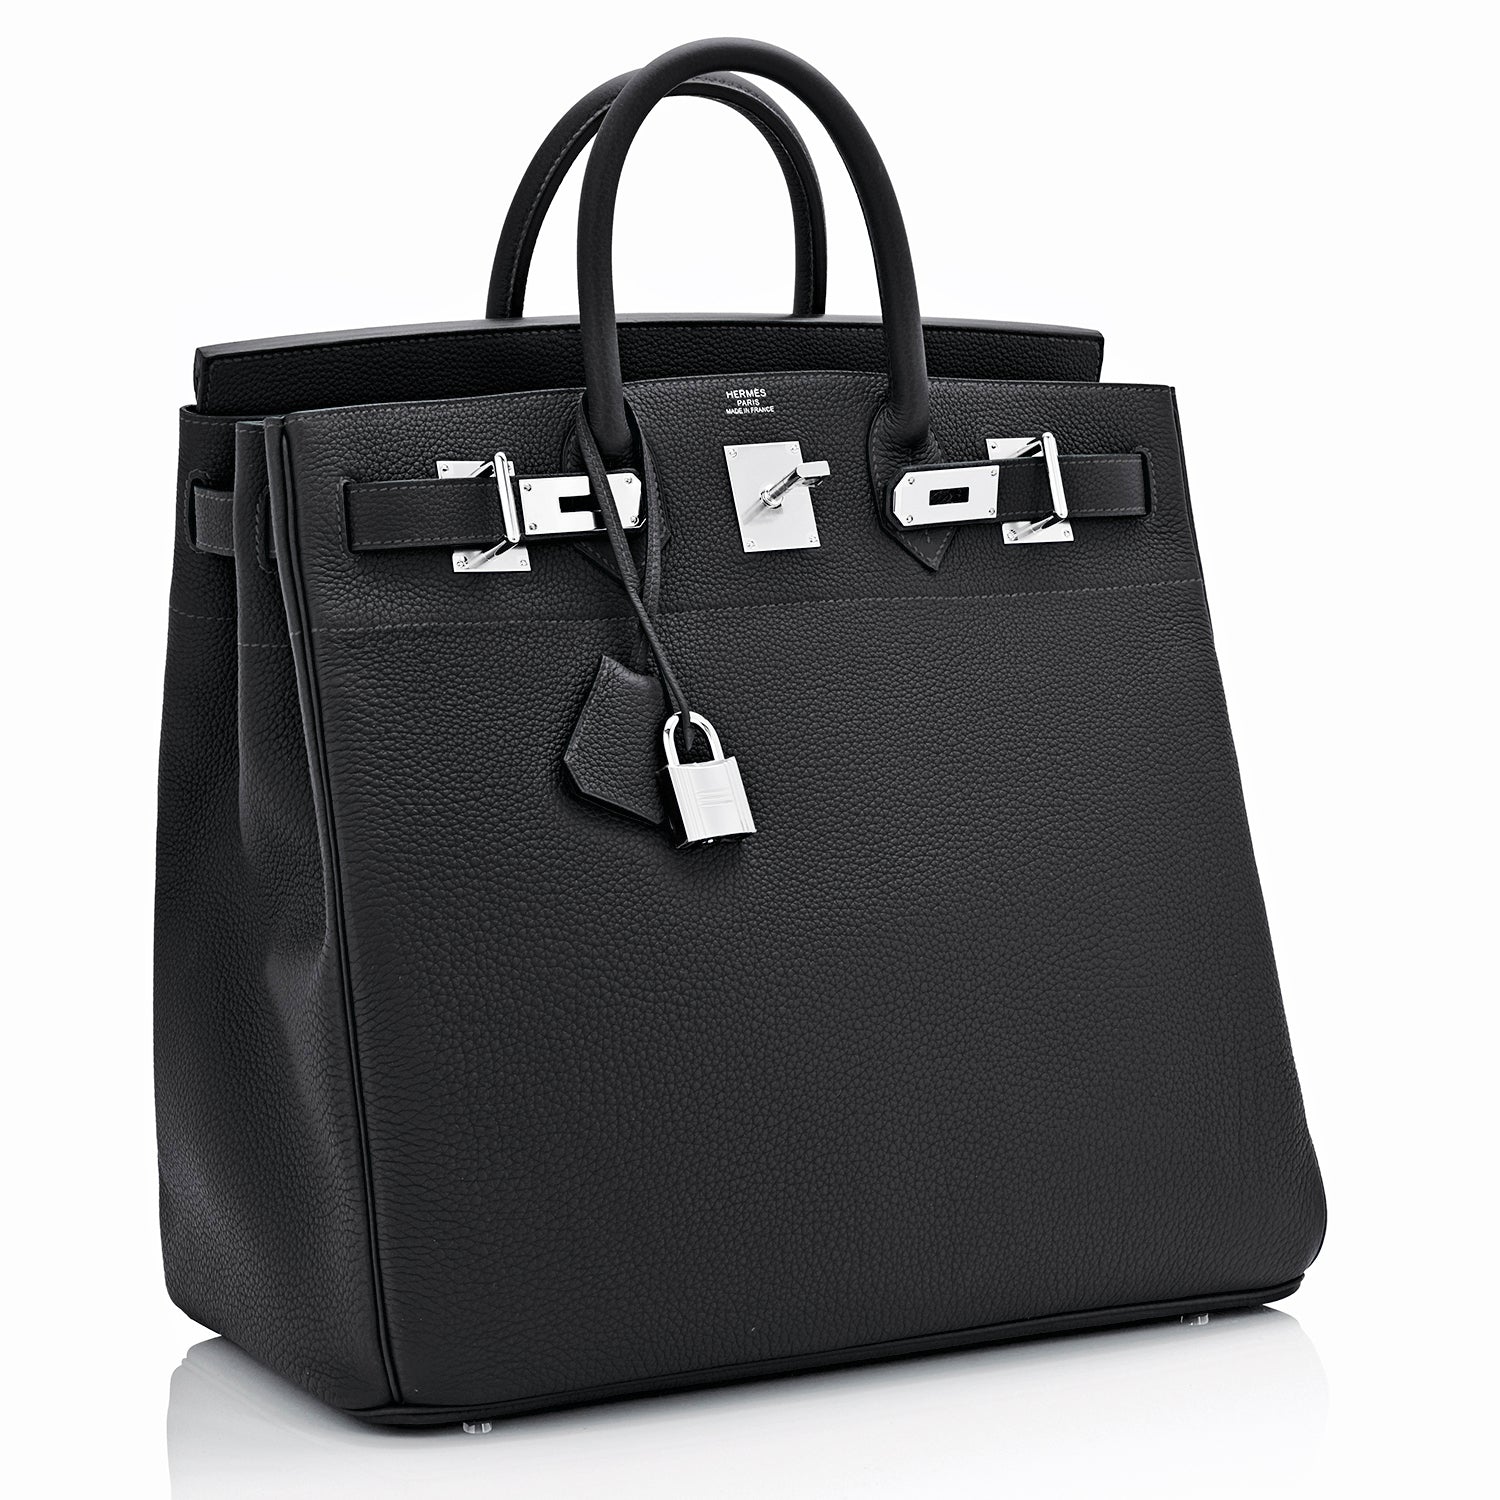 🗝️ Hermès 50cm Birkin HAC Black Togo Leather Palladium Hardware